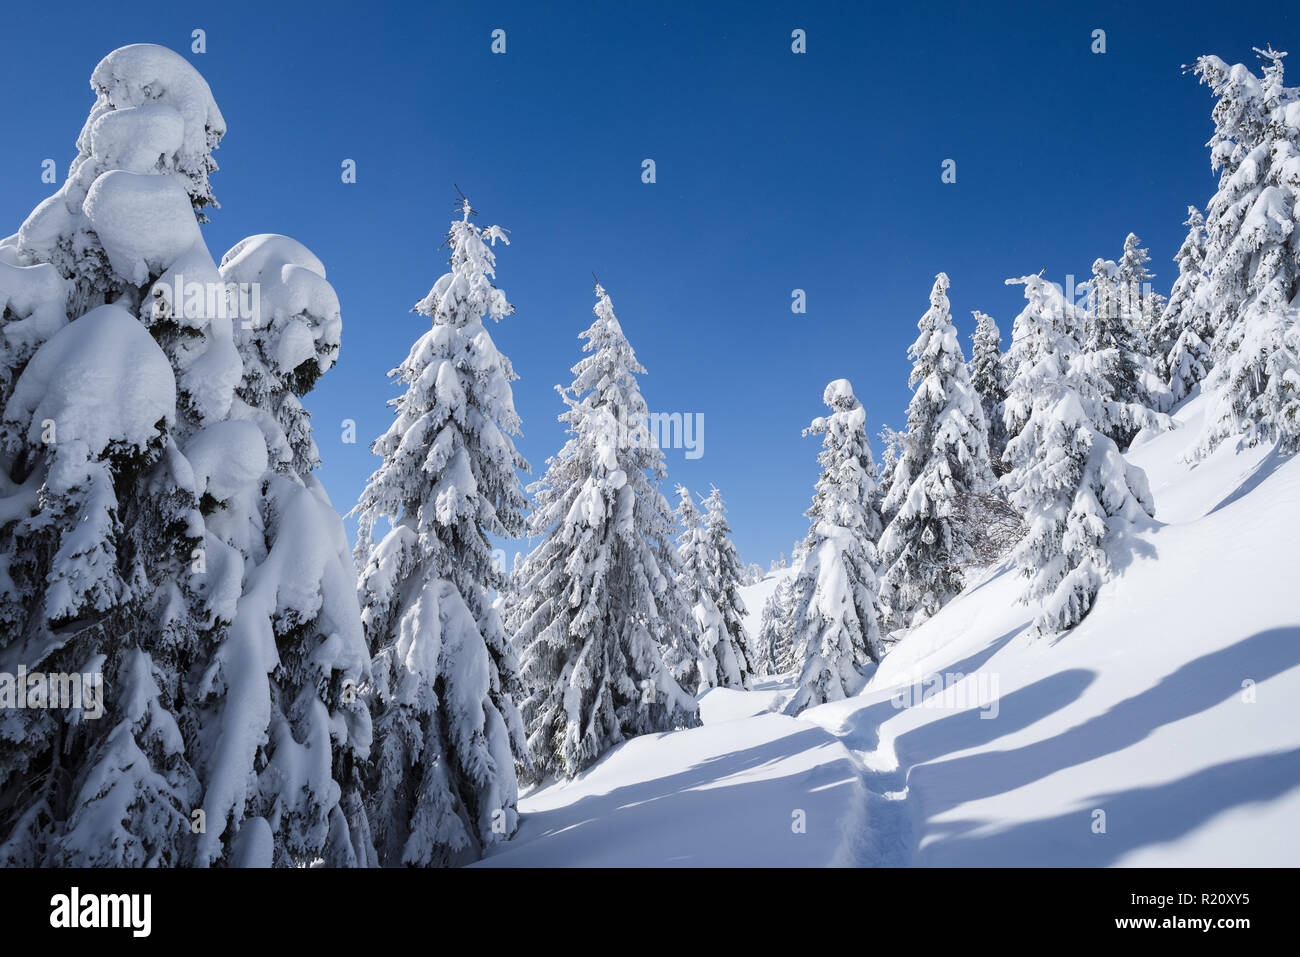 Winter Wonderland background. Frosty mountain journée ensoleillée en pessière. Arbres enneigés et sentier dans la neige. Ciel bleu clair Banque D'Images